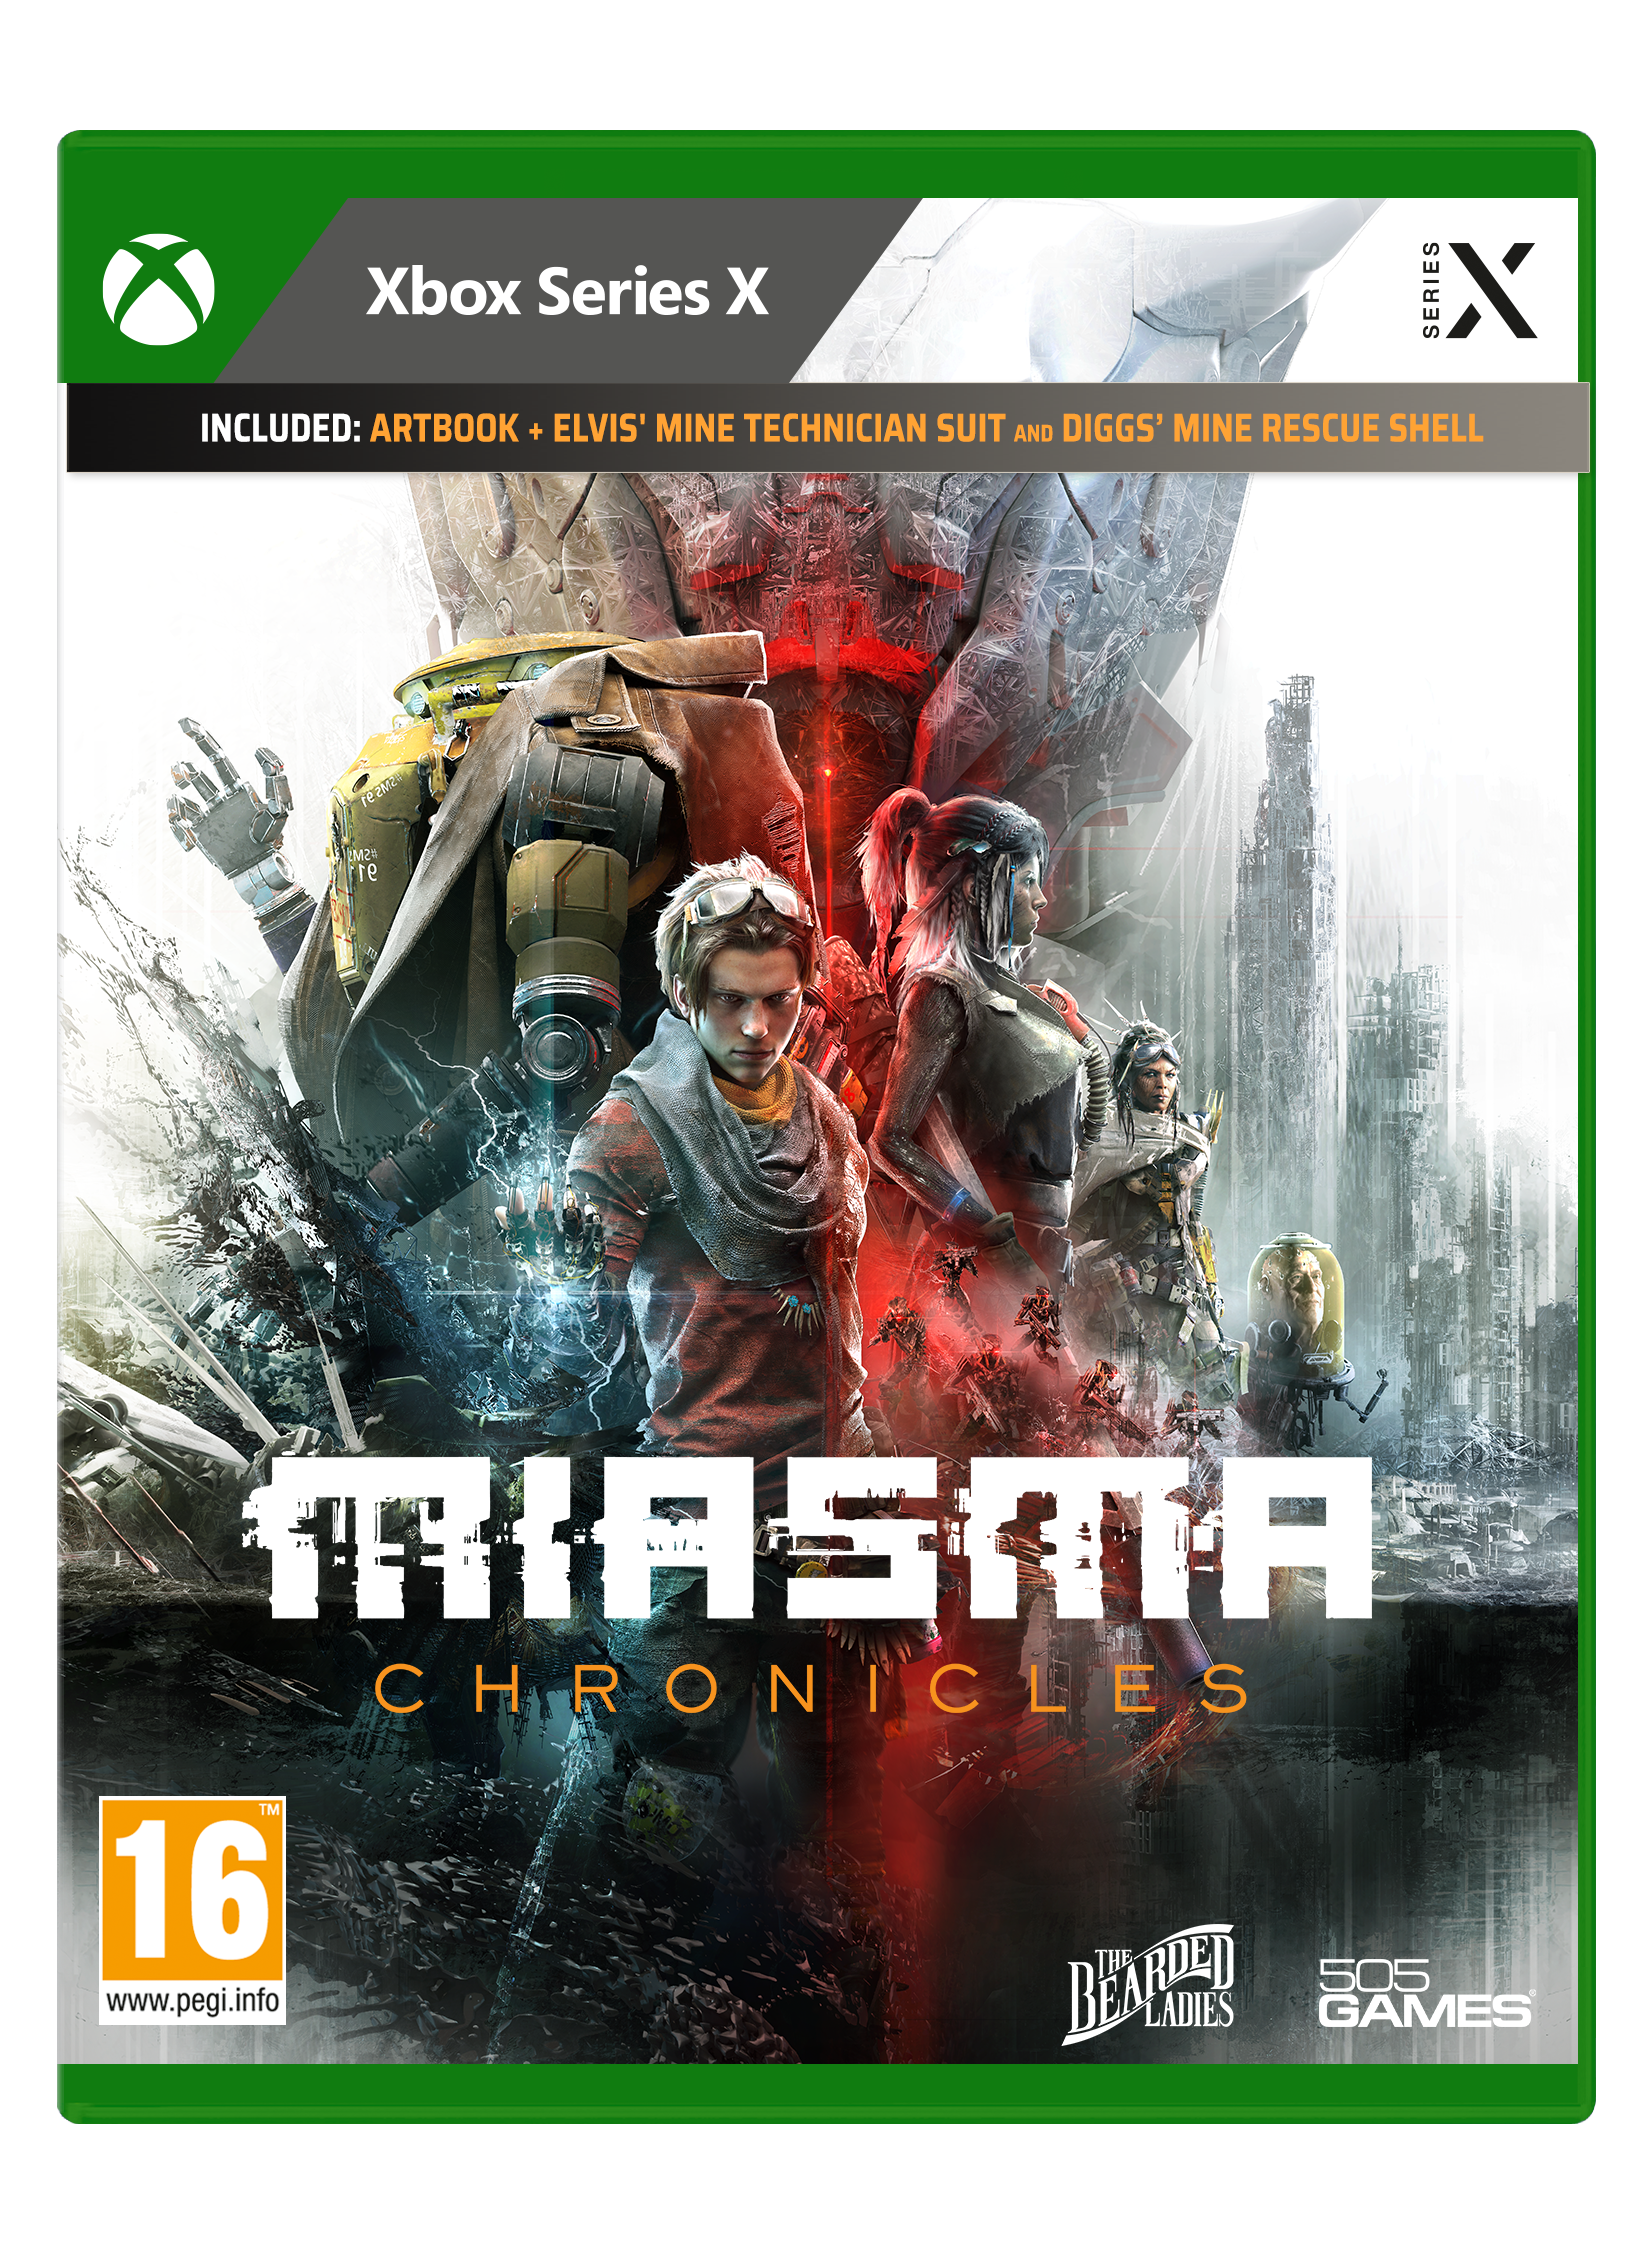 Miasma Chronicles von 505 Games